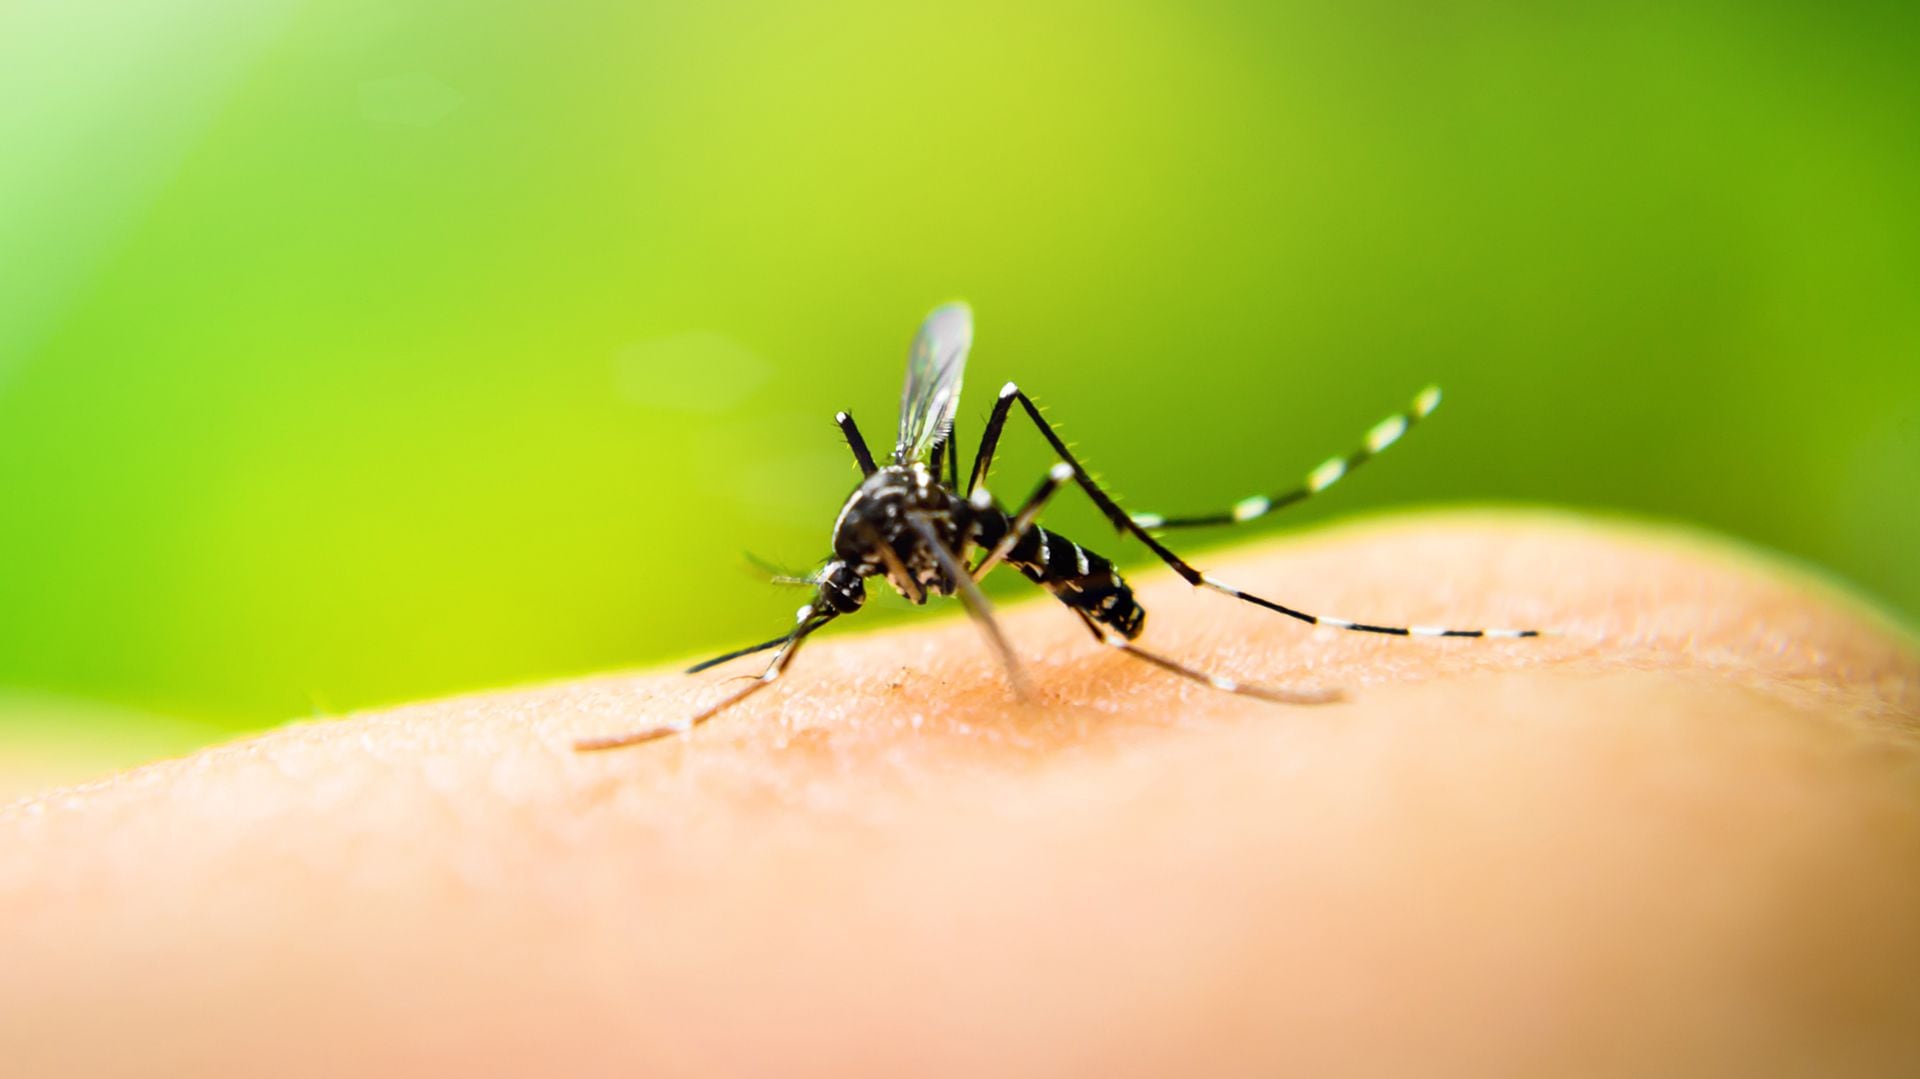 La prevención en el hogar es fundamental, por eso es importante la limpieza y mantenimiento esenciales para evitar la proliferación del mosquito transmisor del dengue (iStock)